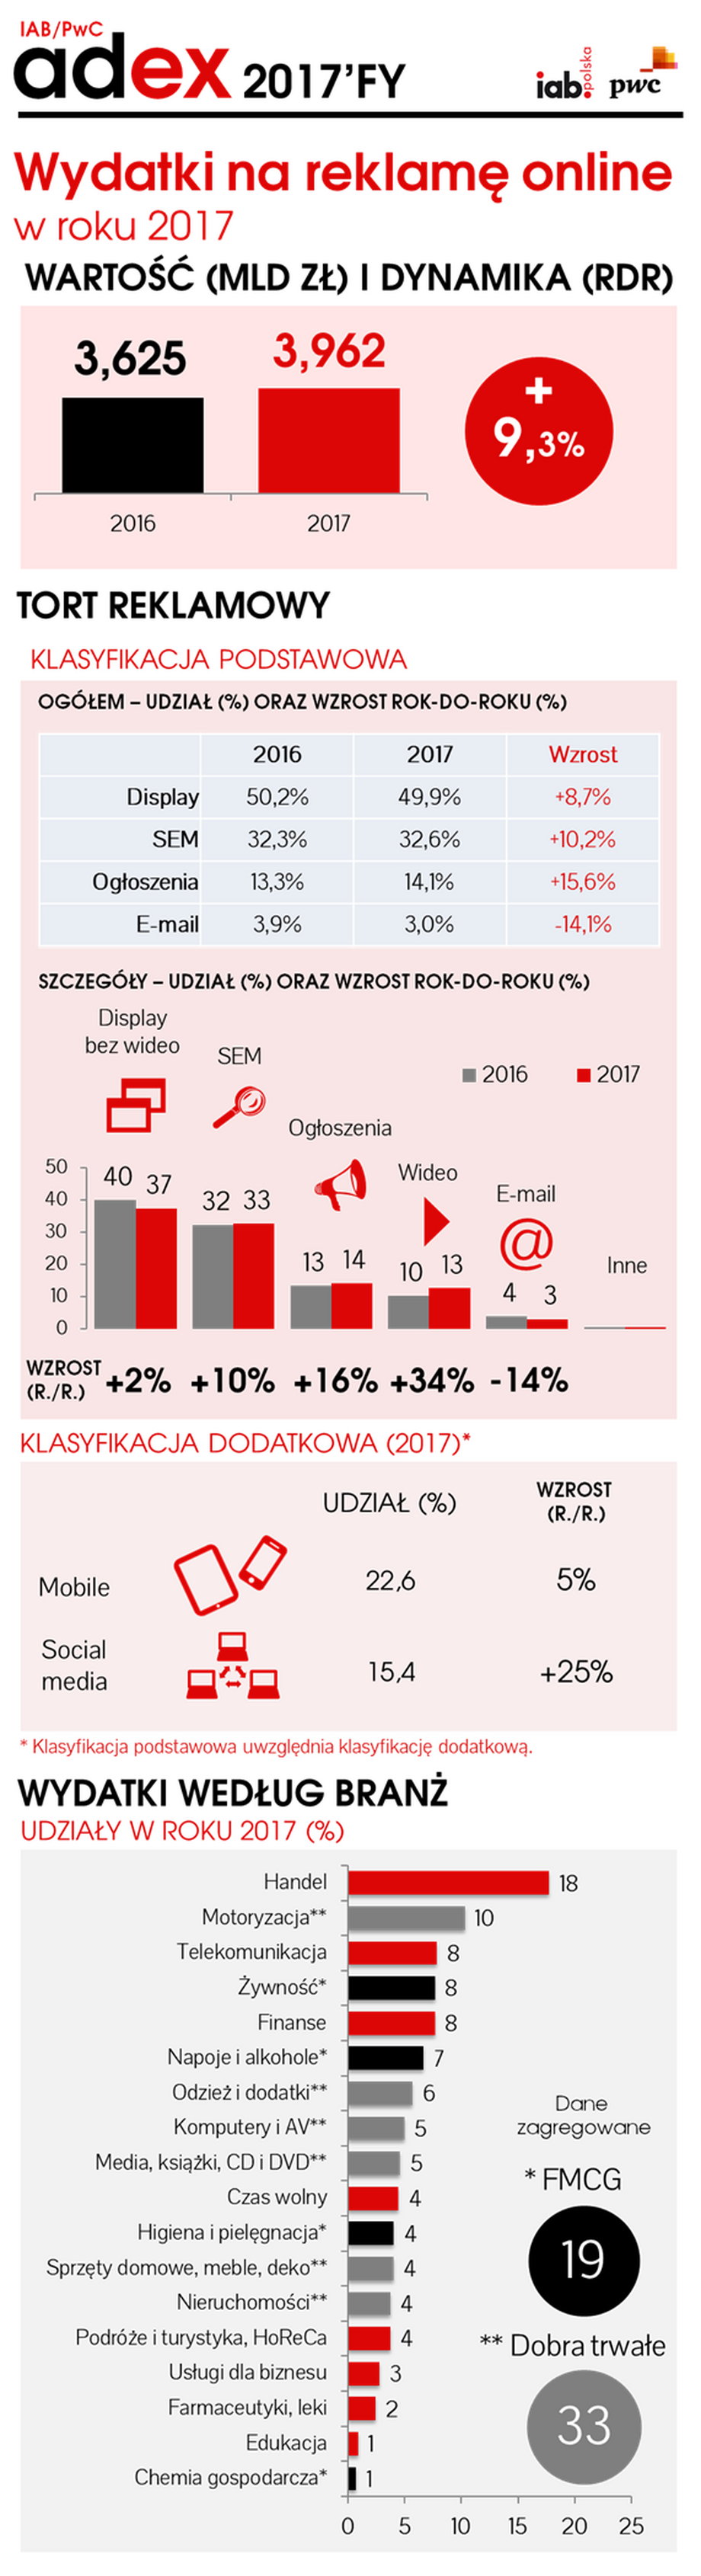 Rynek reklamy internetowej w Polsce w 2017 roku